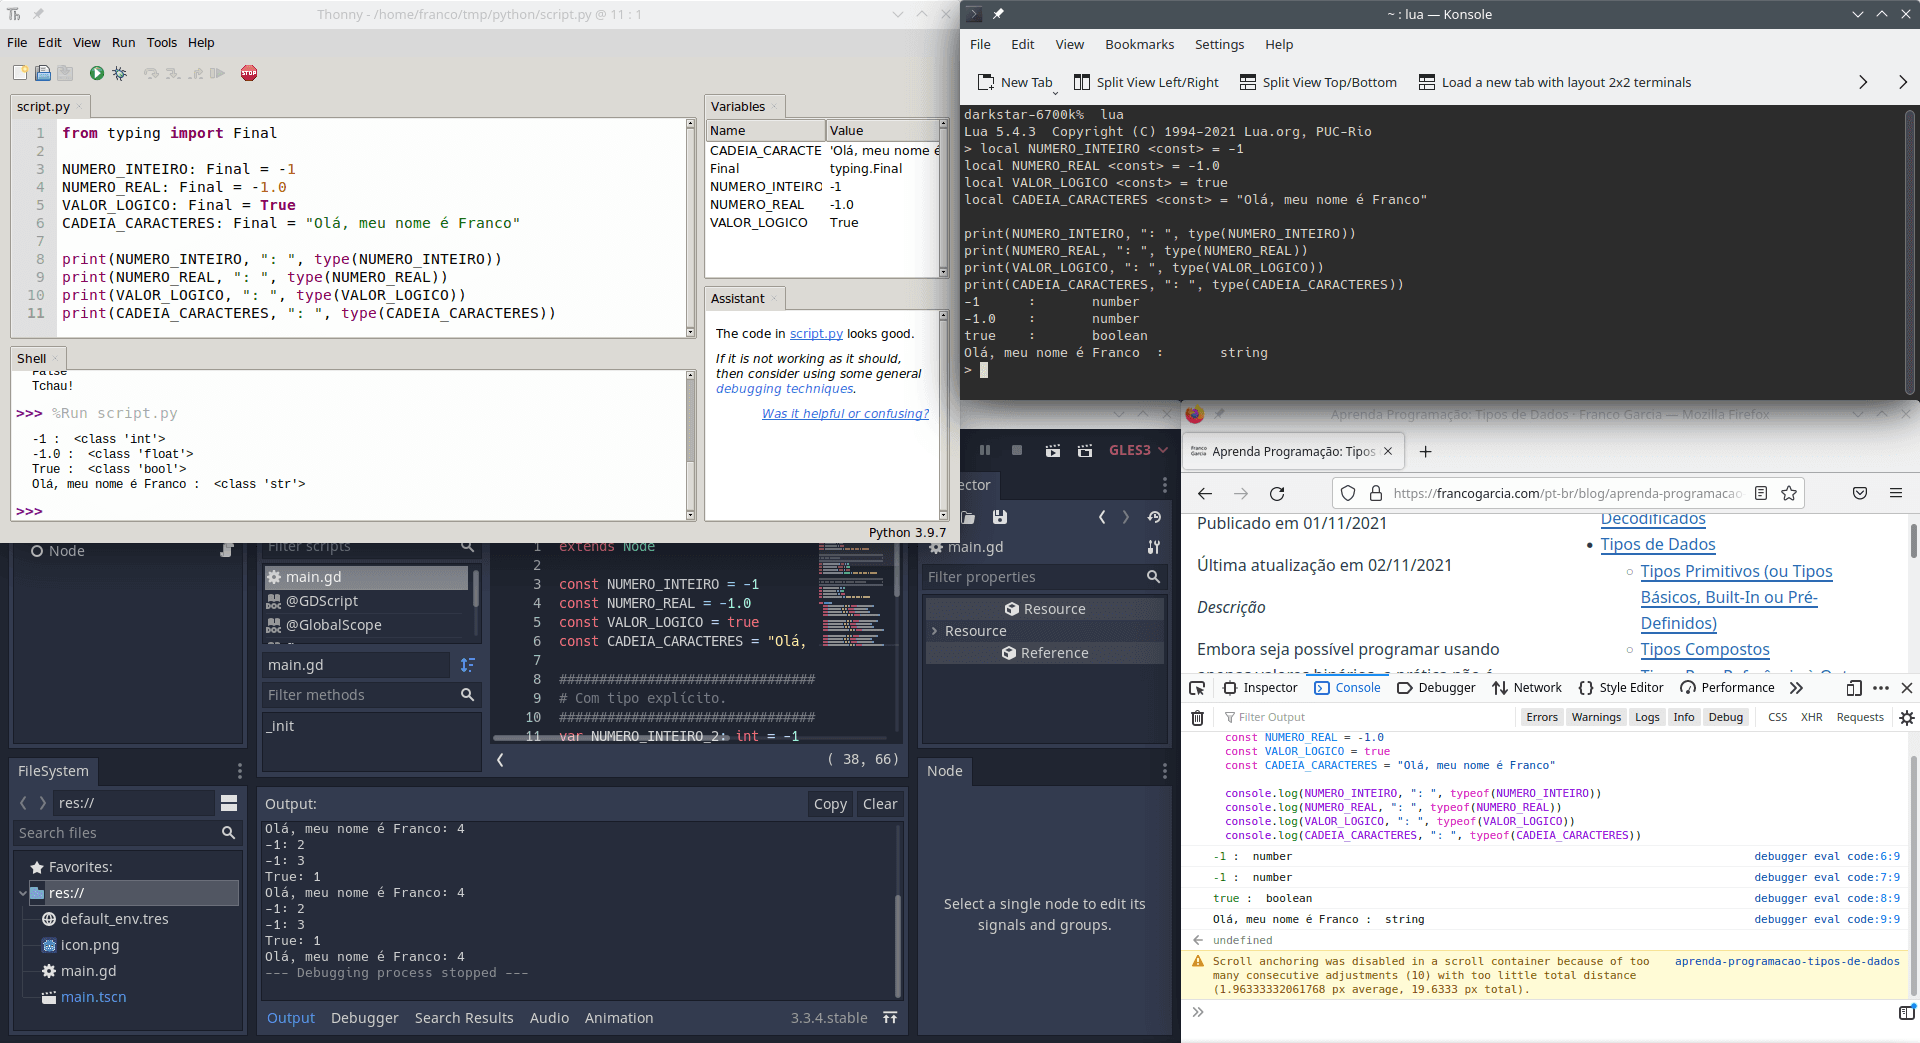 Exemplo de uso de constantes nas linguagens de programação Python, Lua, GDScript e JavaScript utilizando os trechos de código anteriores.